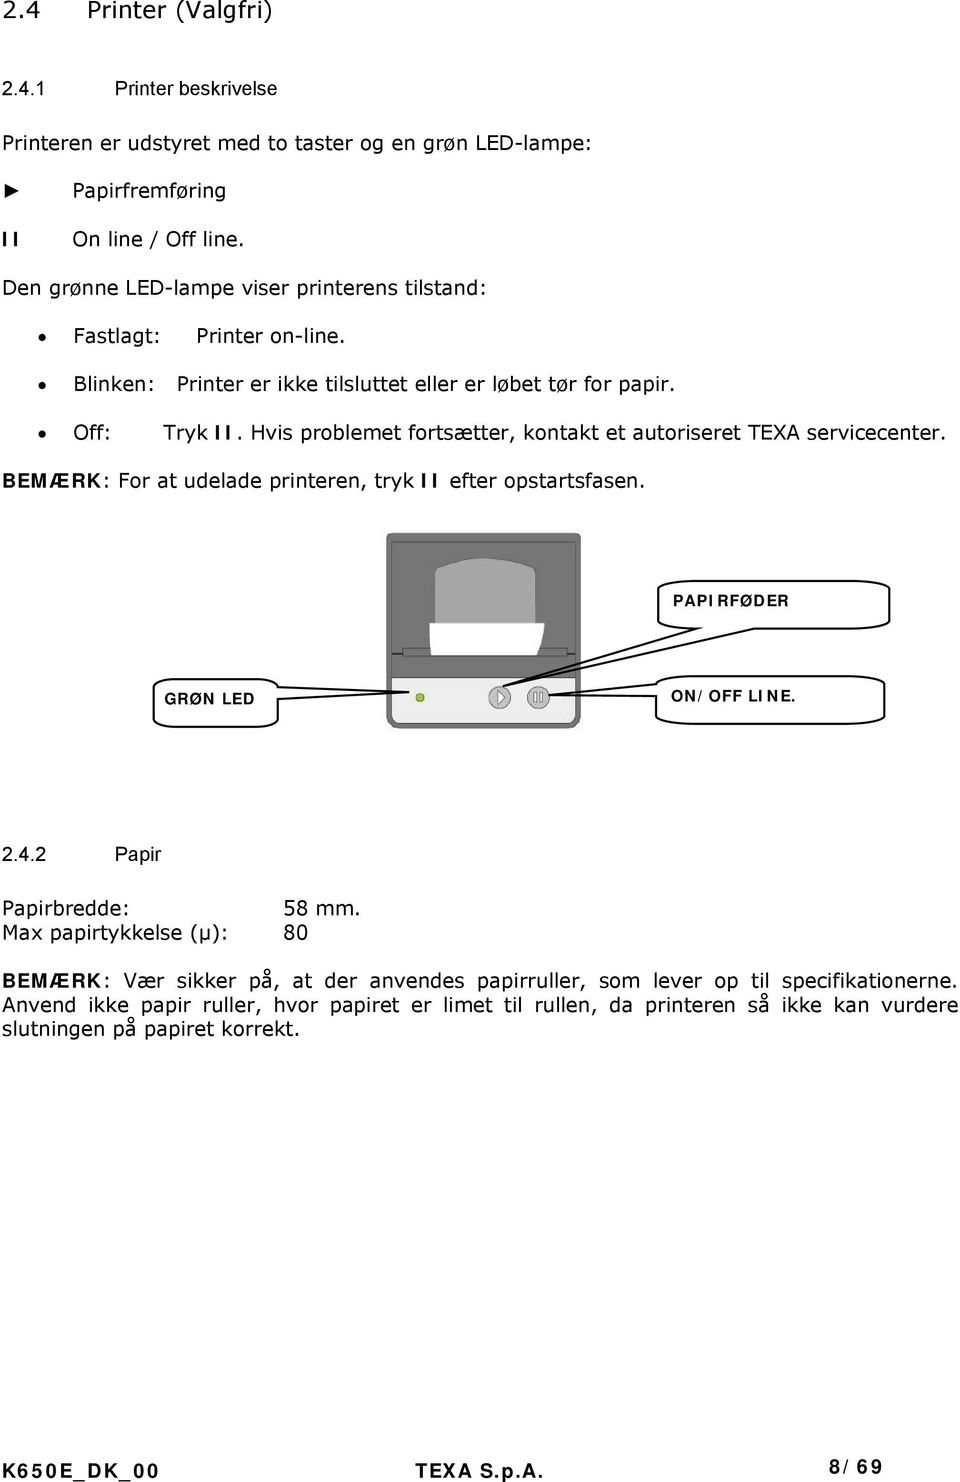 Hvis problemet fortsætter, kontakt et autoriseret TEXA servicecenter. BEMÆRK: For at udelade printeren, tryk II efter opstartsfasen. PAPIRFØDER GRØN LED ON/OFF LINE. 2.4.